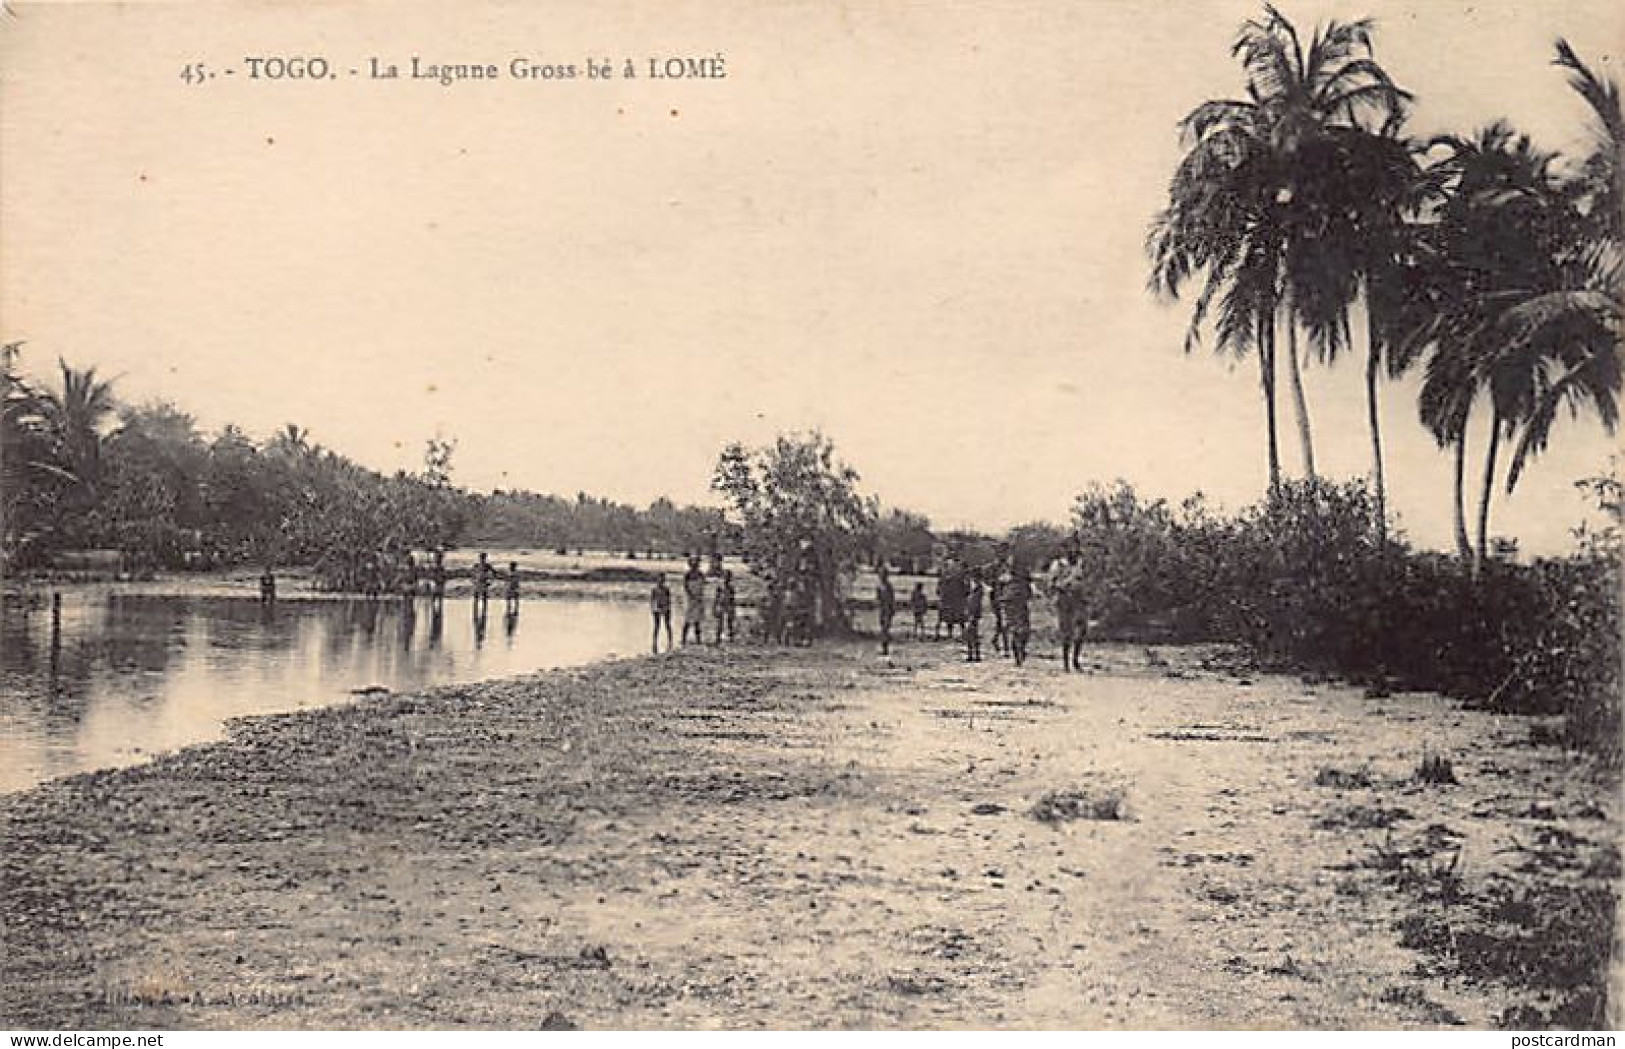 TOGO - LOMÉ - La Lagune Gross-bé - Ed. A. Acolatse 45 - Togo